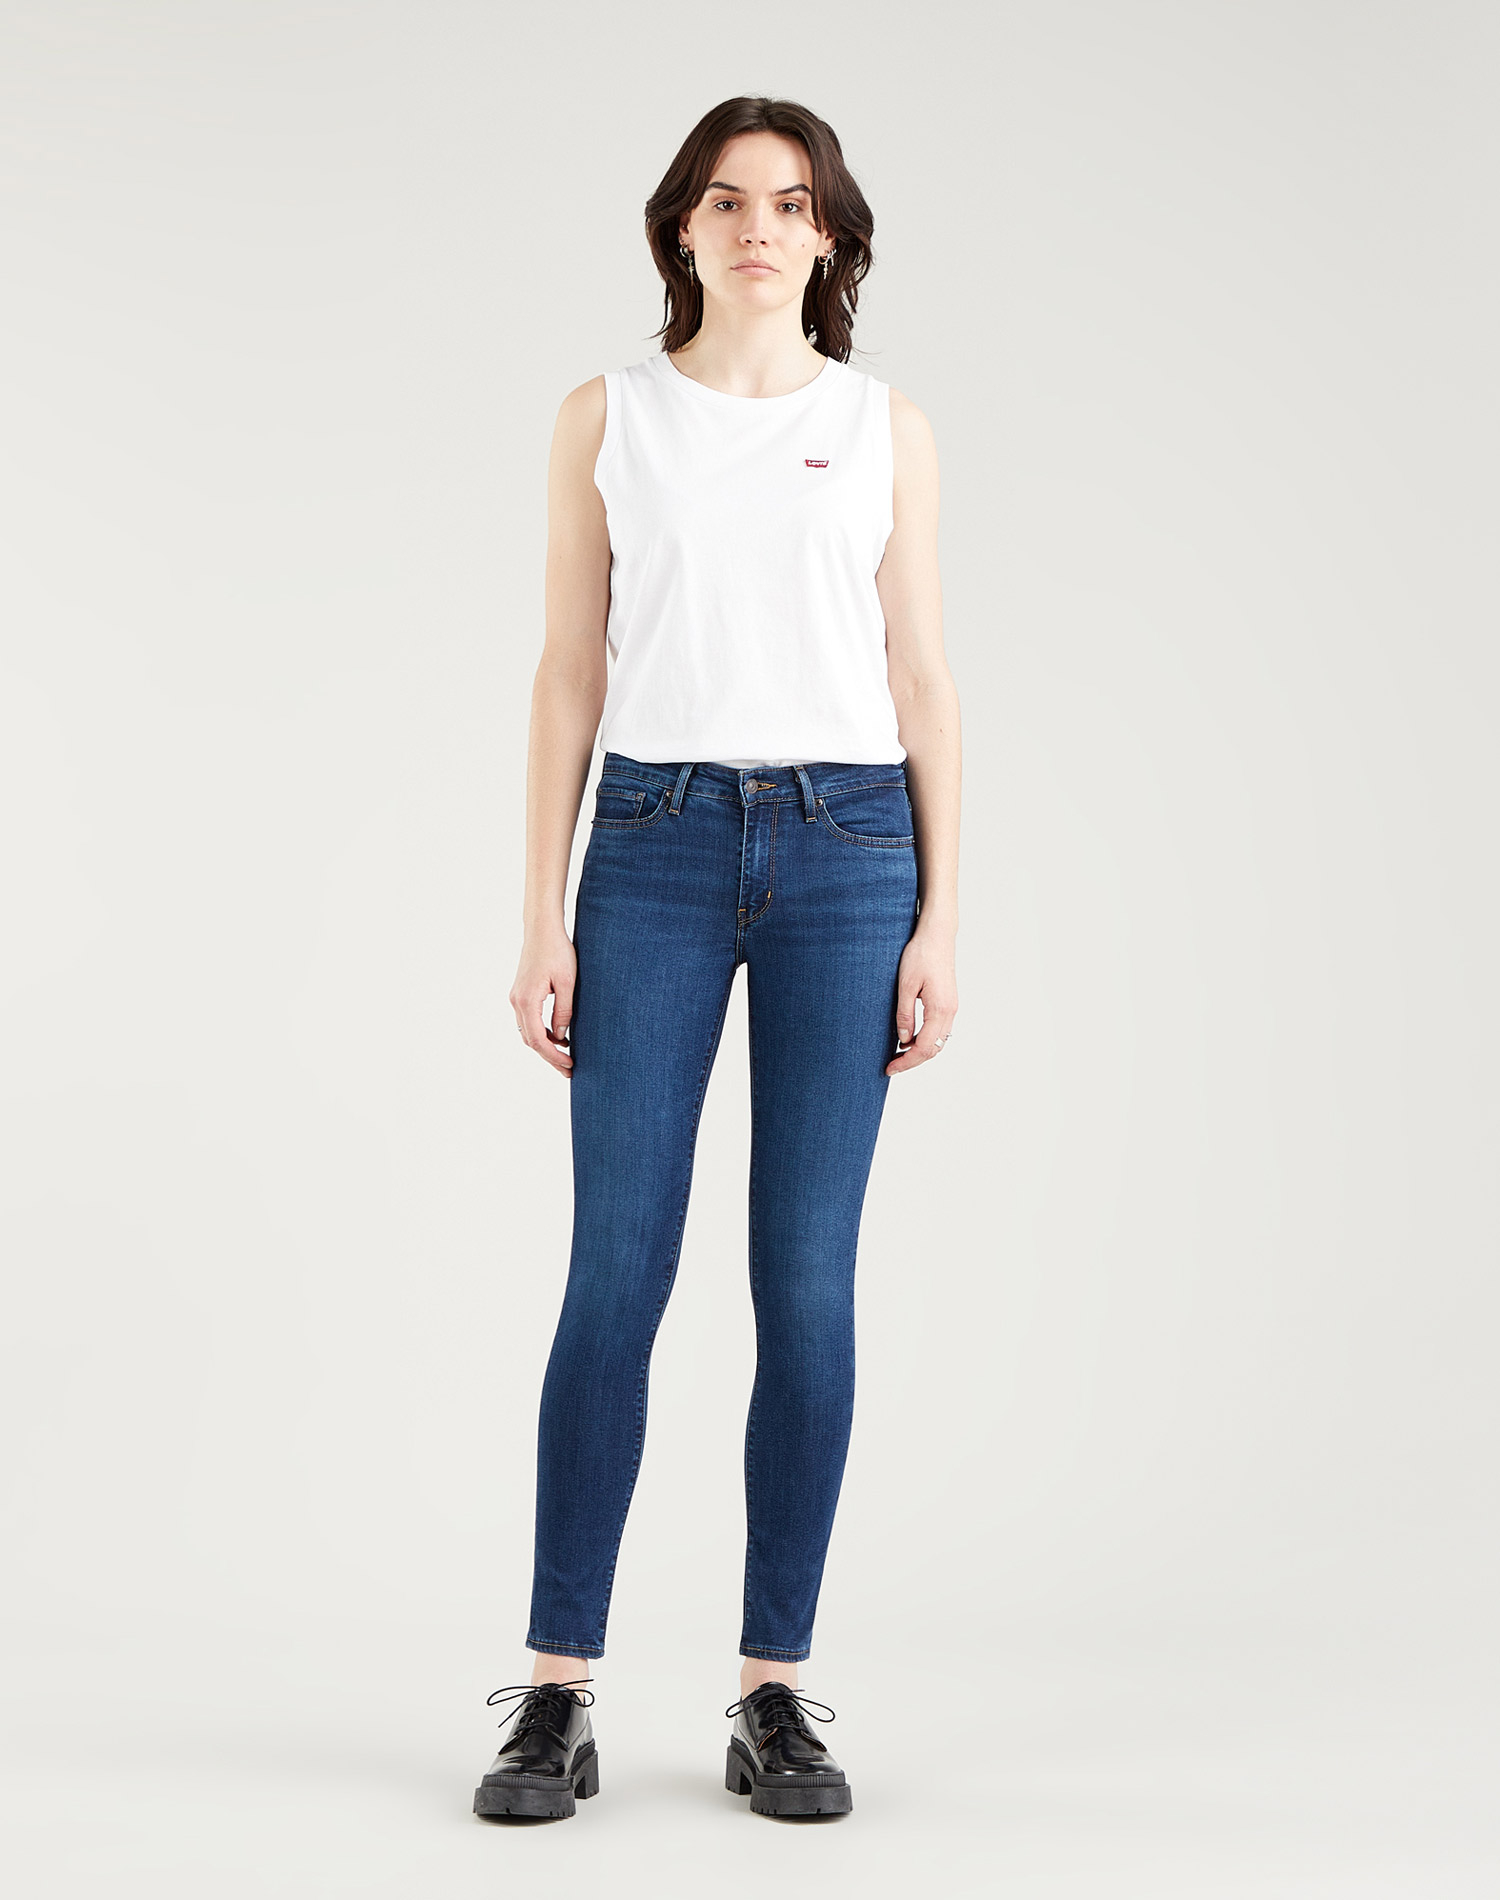 Levi's® 711™ skinny pantalons texans de dona 18881-0600 blau mig